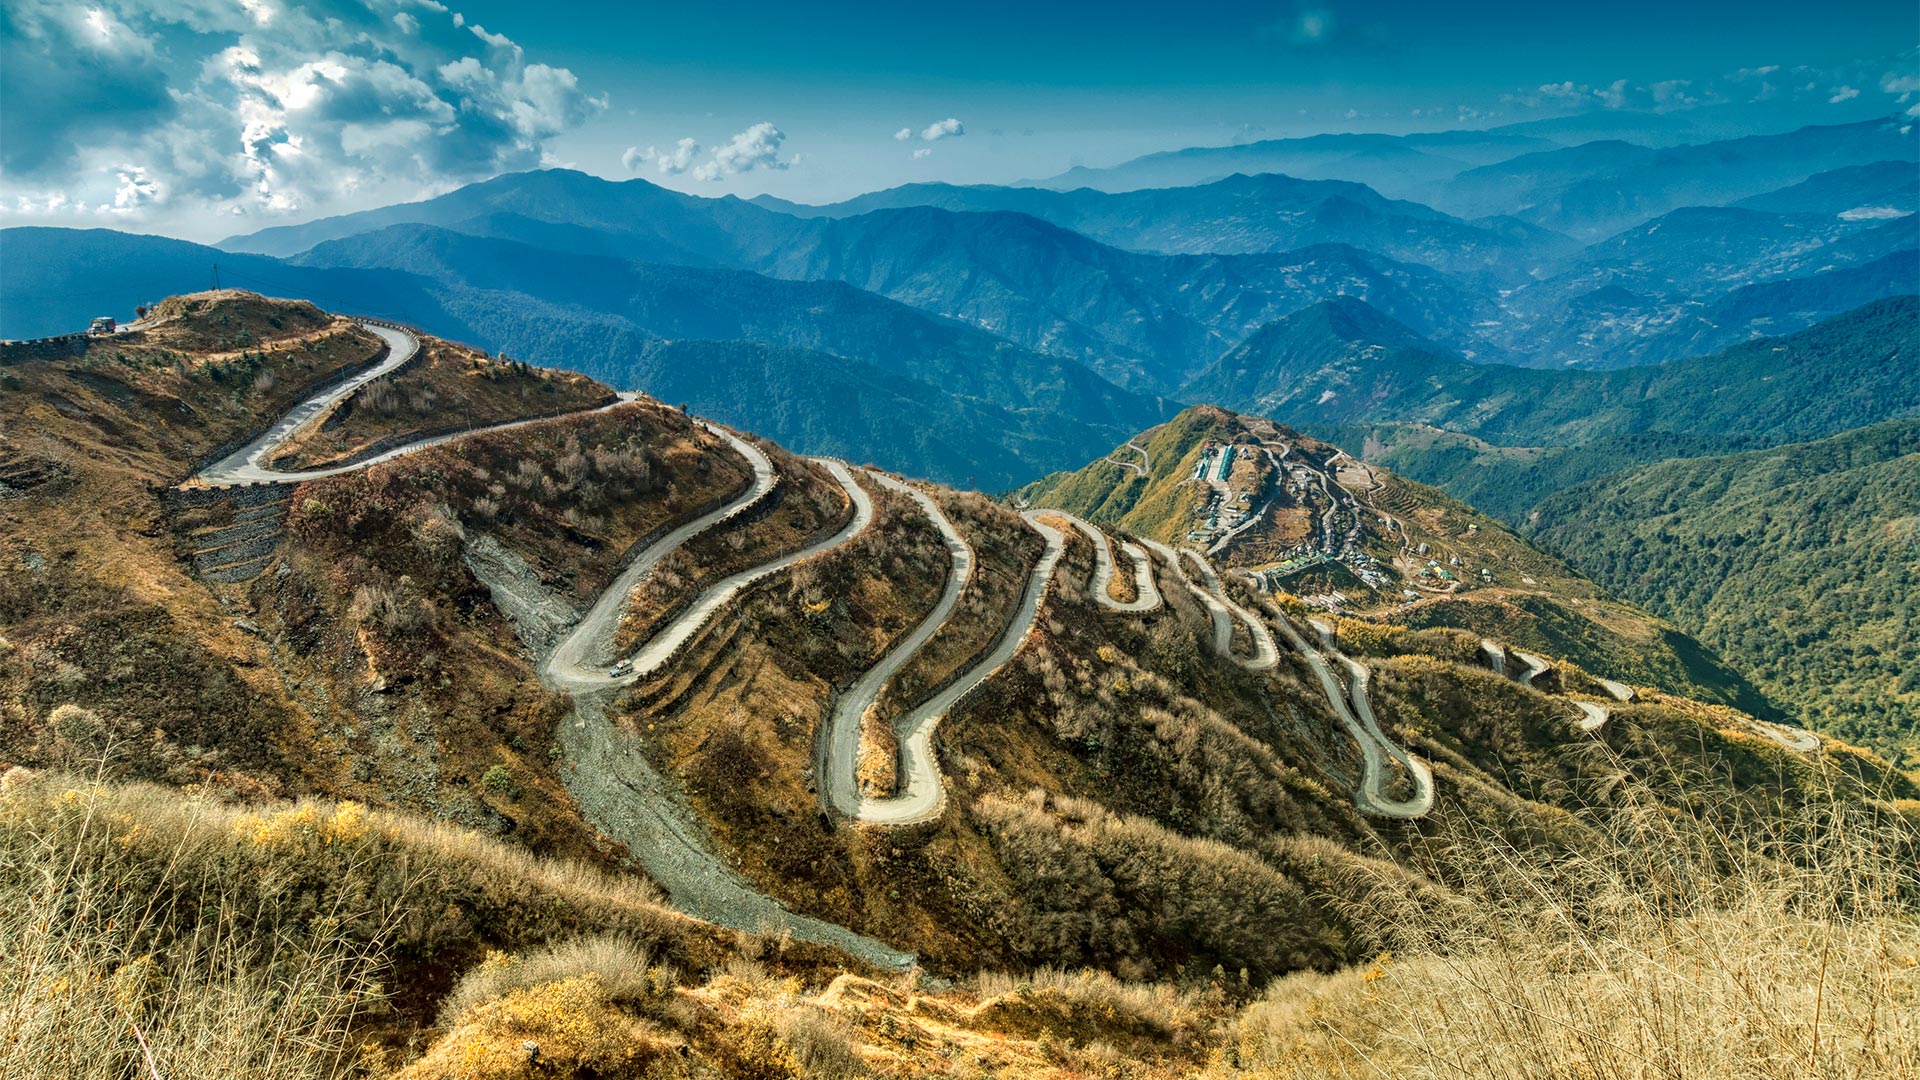 Beautiful curvy roads down a mountain